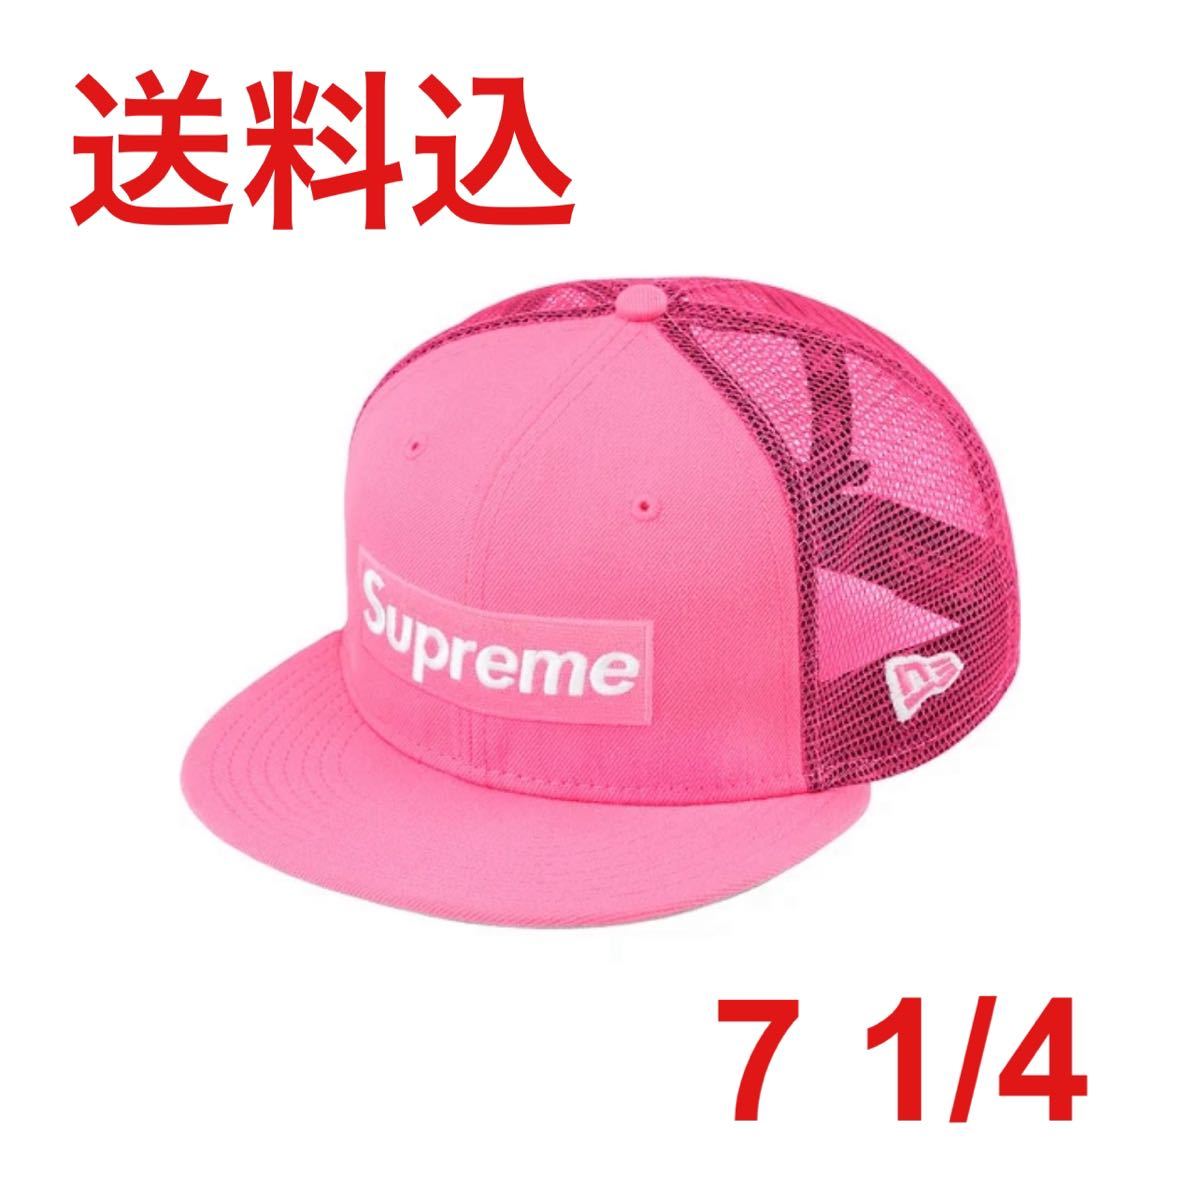 大勧め 帽子 1/4 7 Pink Cap Mesh Logo Box Era New Supreme 帽子